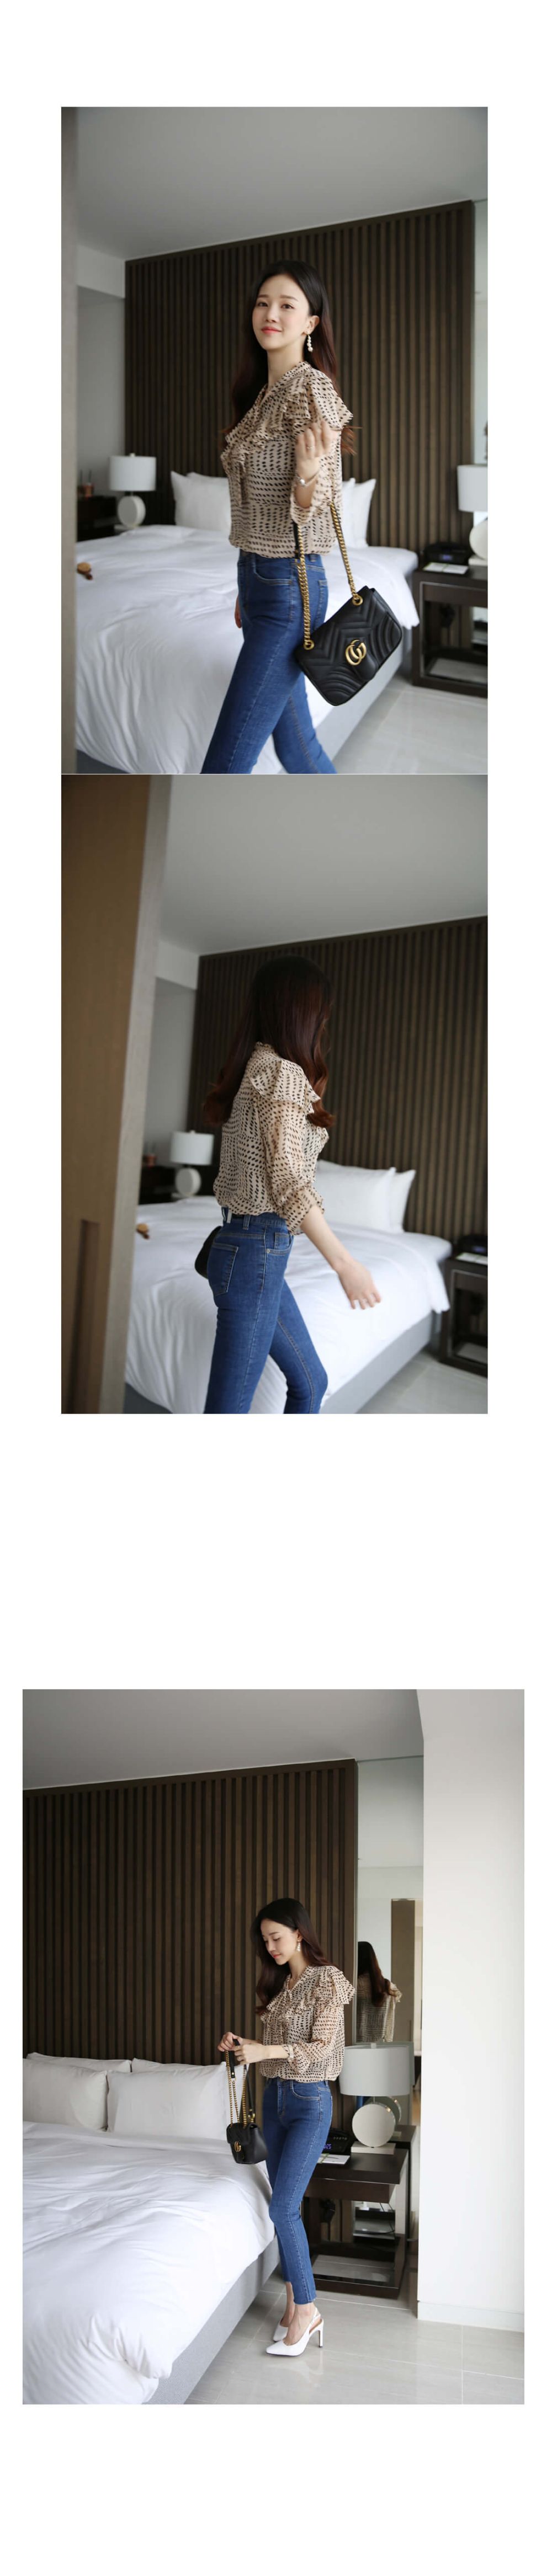 韓國平價服飾 激瘦-5kg 九分牛仔褲